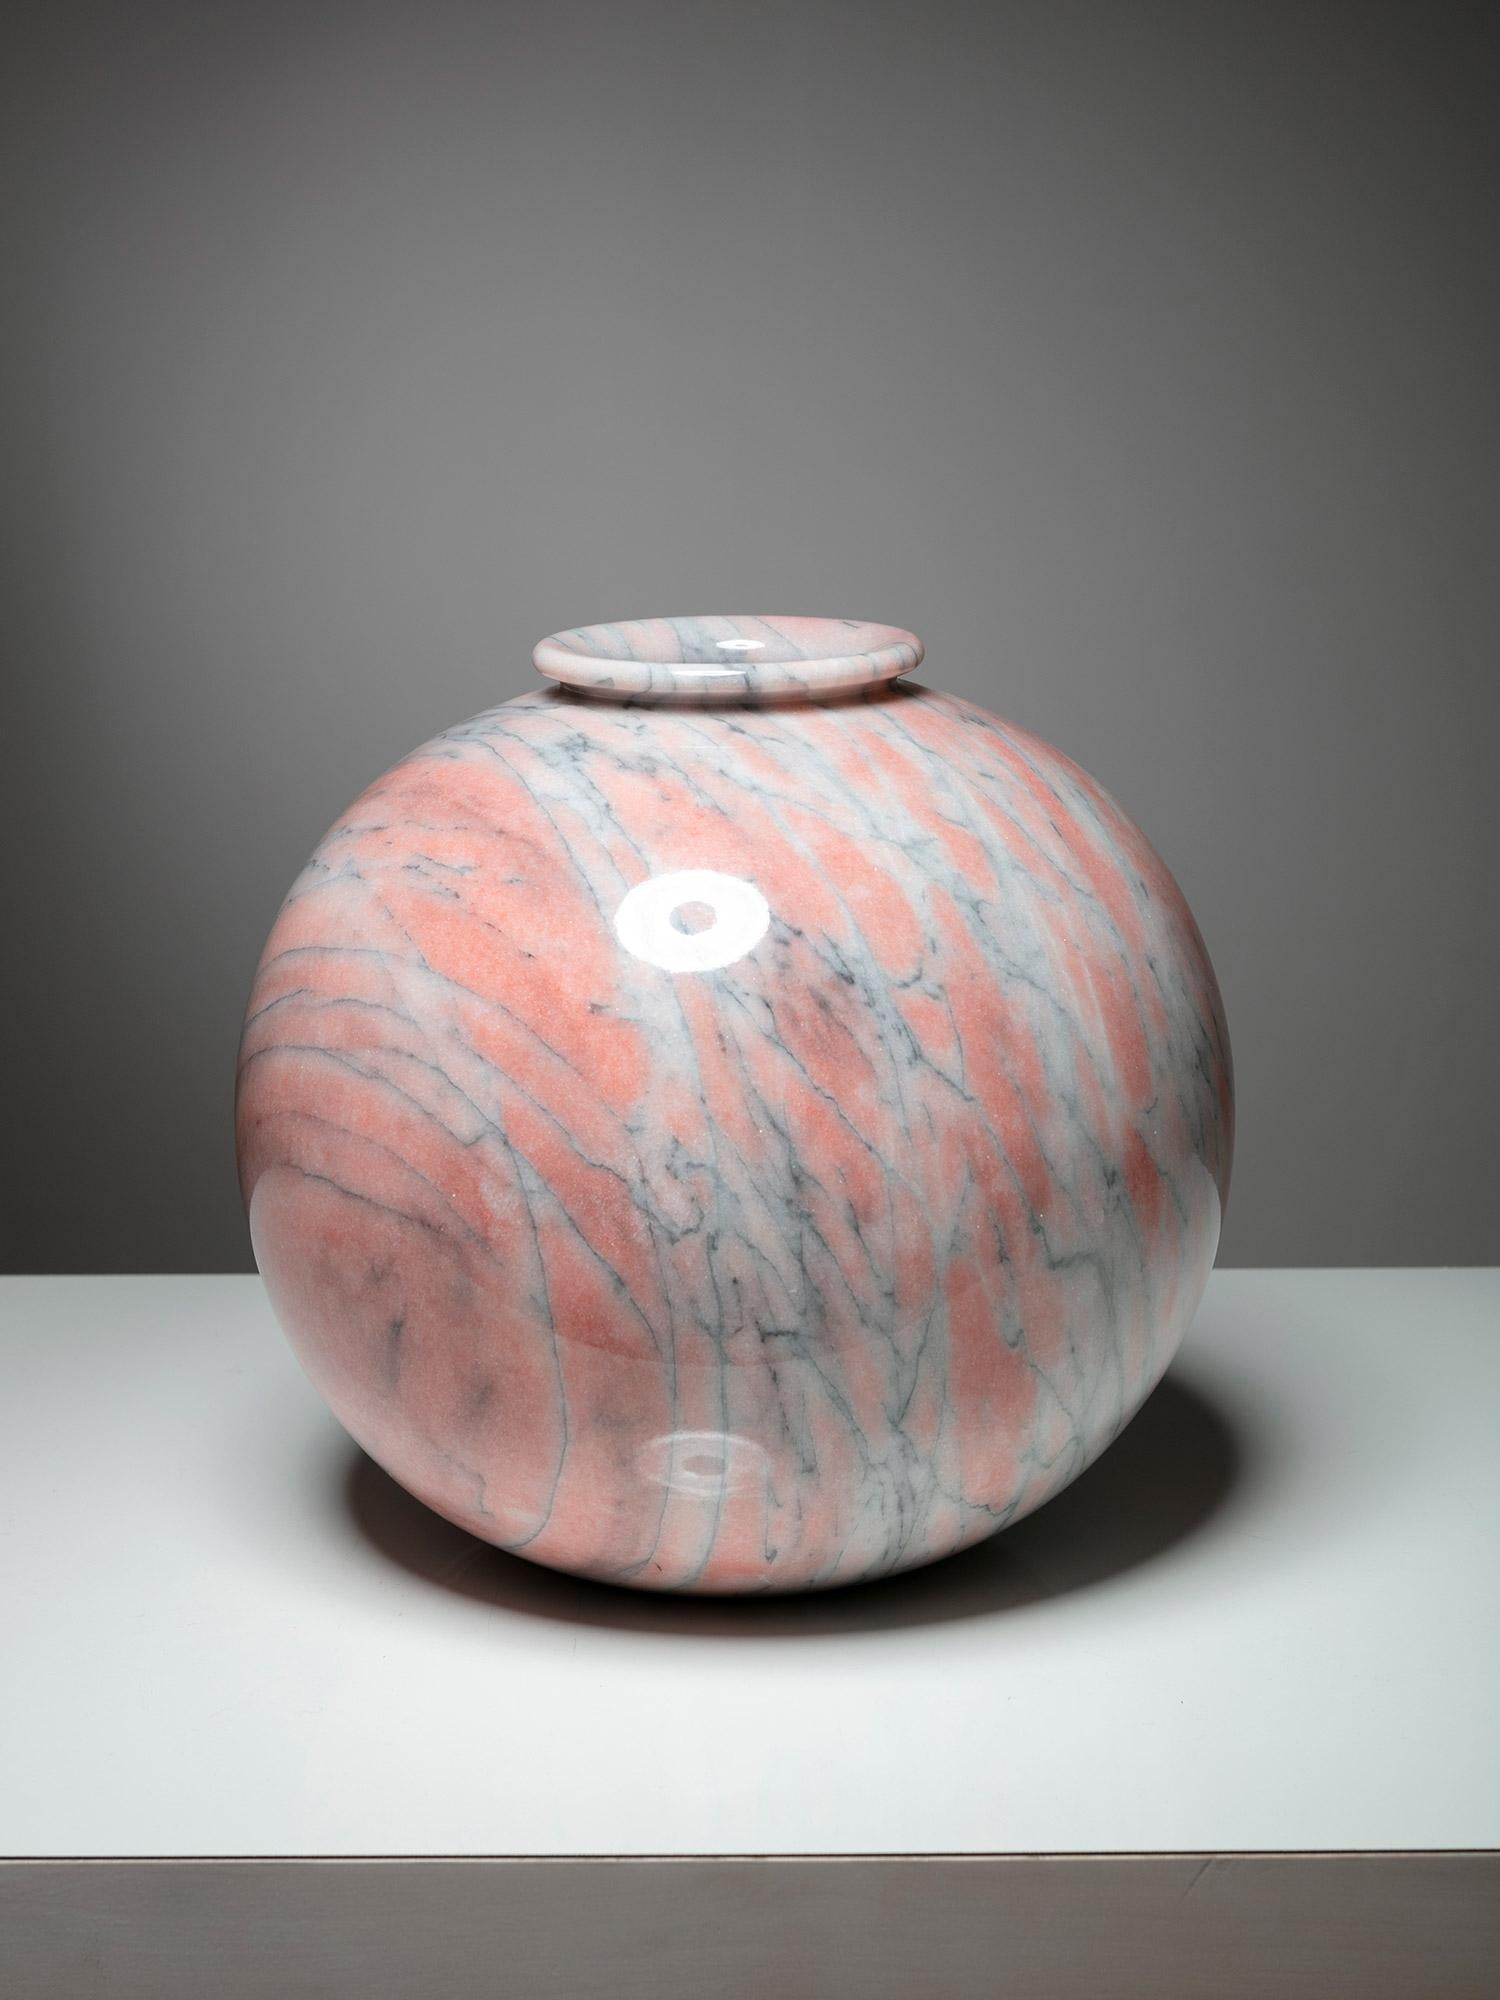 Grand vase en marbre des années 70.
Teintes douces de rose, de blanc et de bleu.
Un modèle similaire en onyx est également disponible.